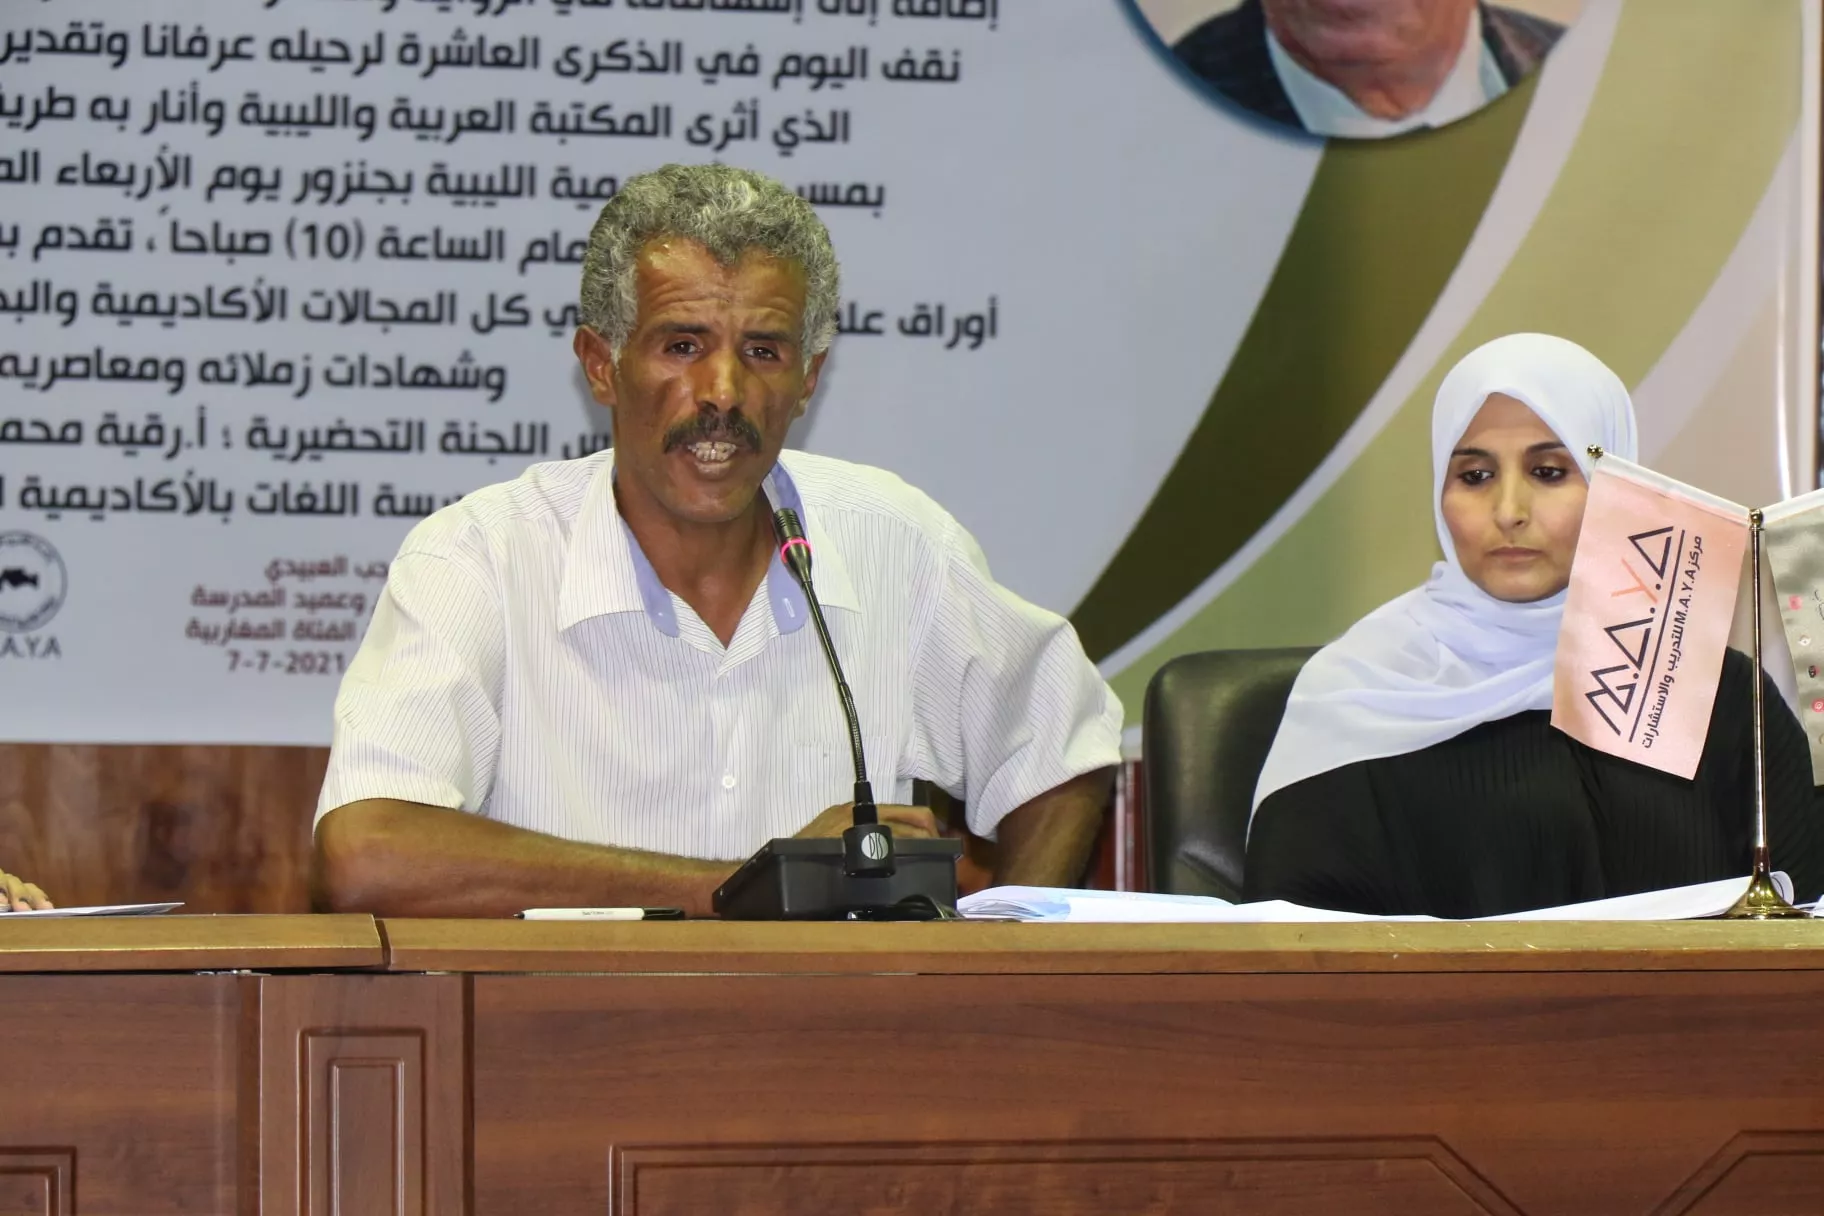 الأكاديمية الليبية تحيي الذِّكْرَى العَاشِرَة لِرَحيلِ العَلاَّمة الدكتور علي فهمي خشيم